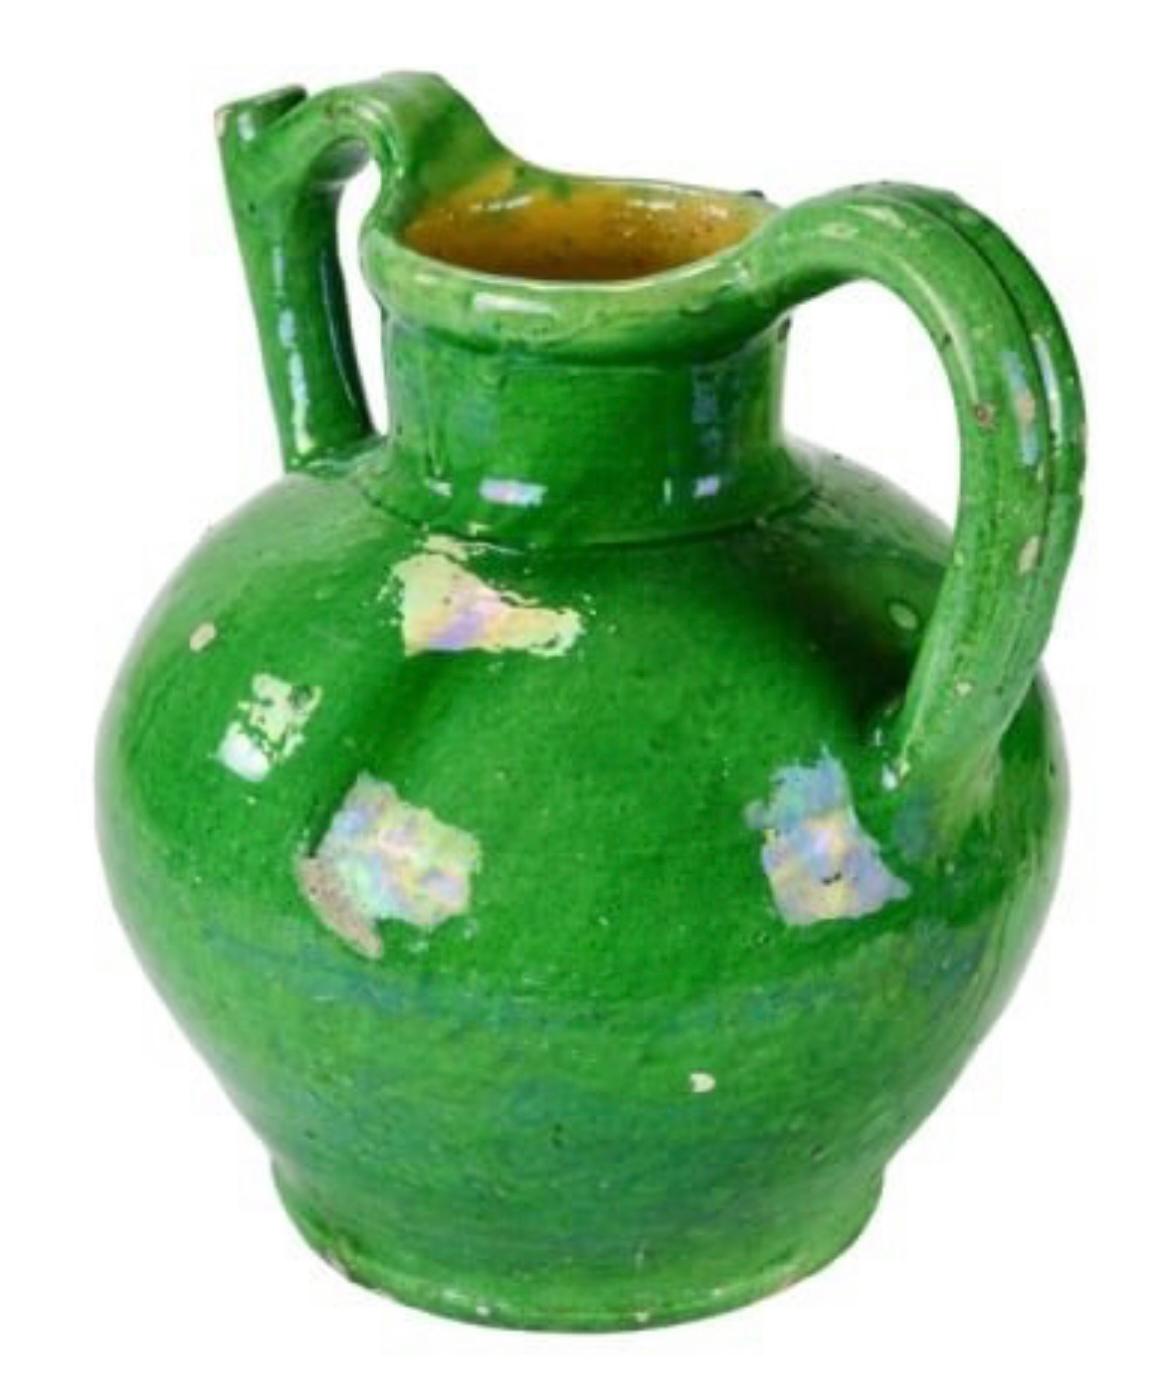 Pichet provençal à deux anses en glaçure verte, fin du 19e siècle. 